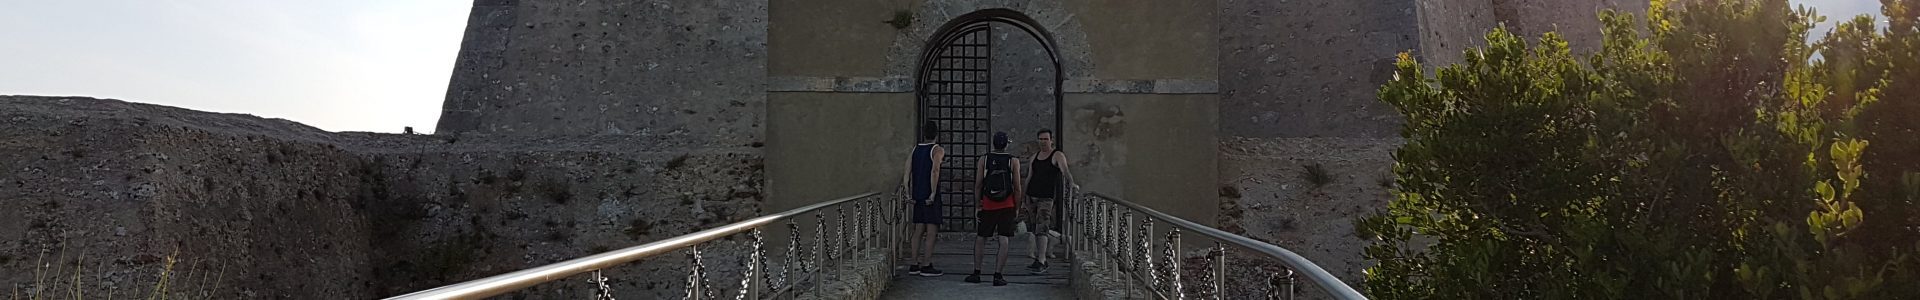 Fortezza Stella in Toscana a Porto Ercole Location d'eccellenza e museo